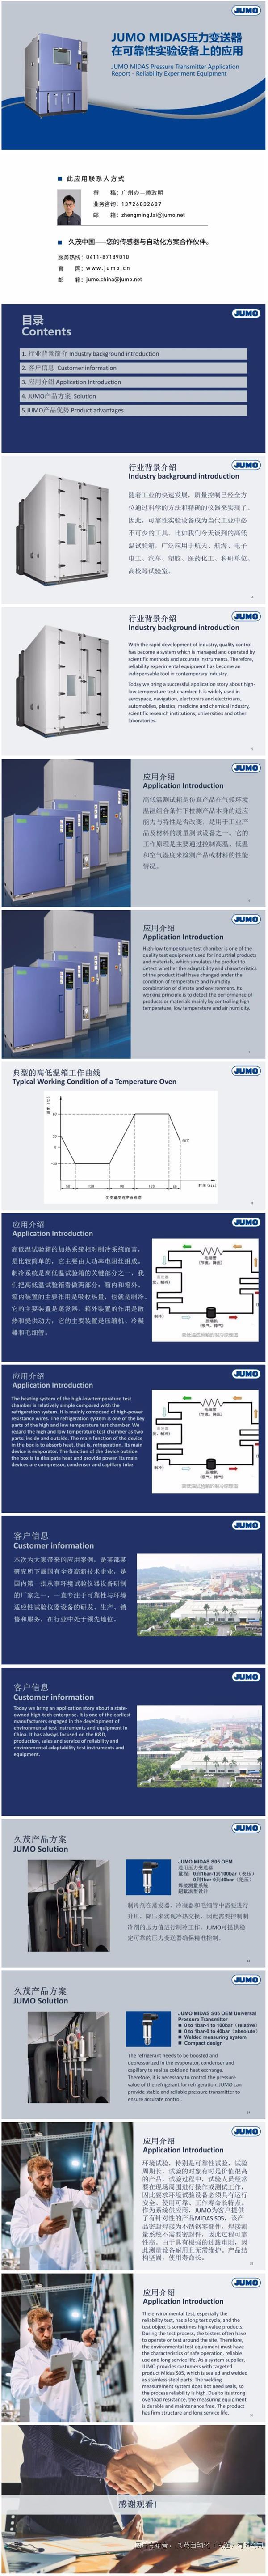 应用案例 _ JUMO MIDAS压力变送器在可靠性实验设备上的应用.png